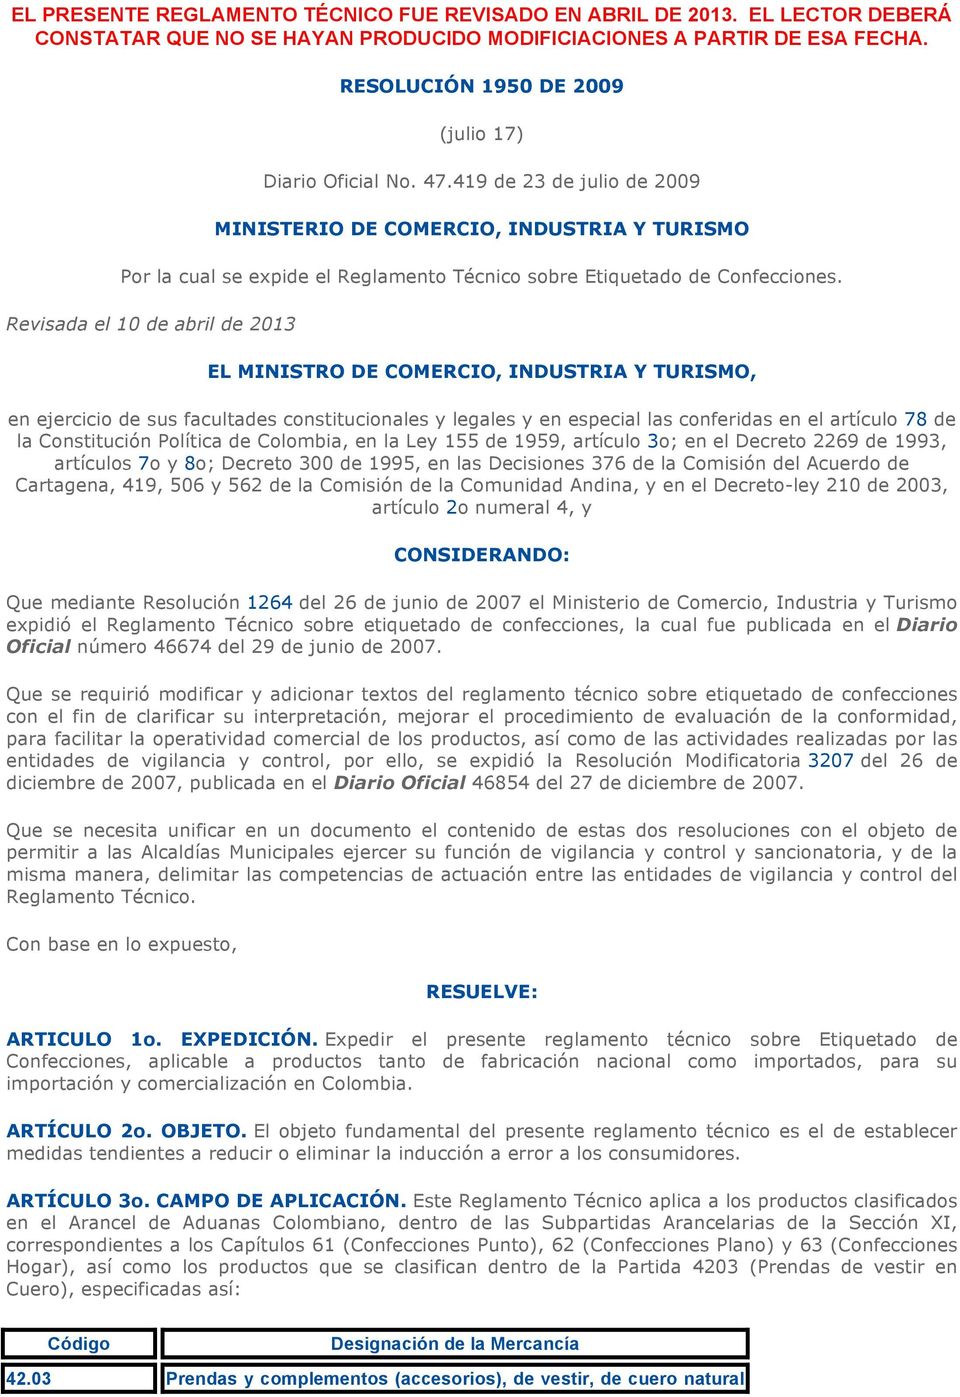 419 de 23 de julio de 2009 MINISTERIO DE COMERCIO, INDUSTRIA Y TURISMO Por la cual se expide el Reglamento Técnico sobre Etiquetado de Confecciones.